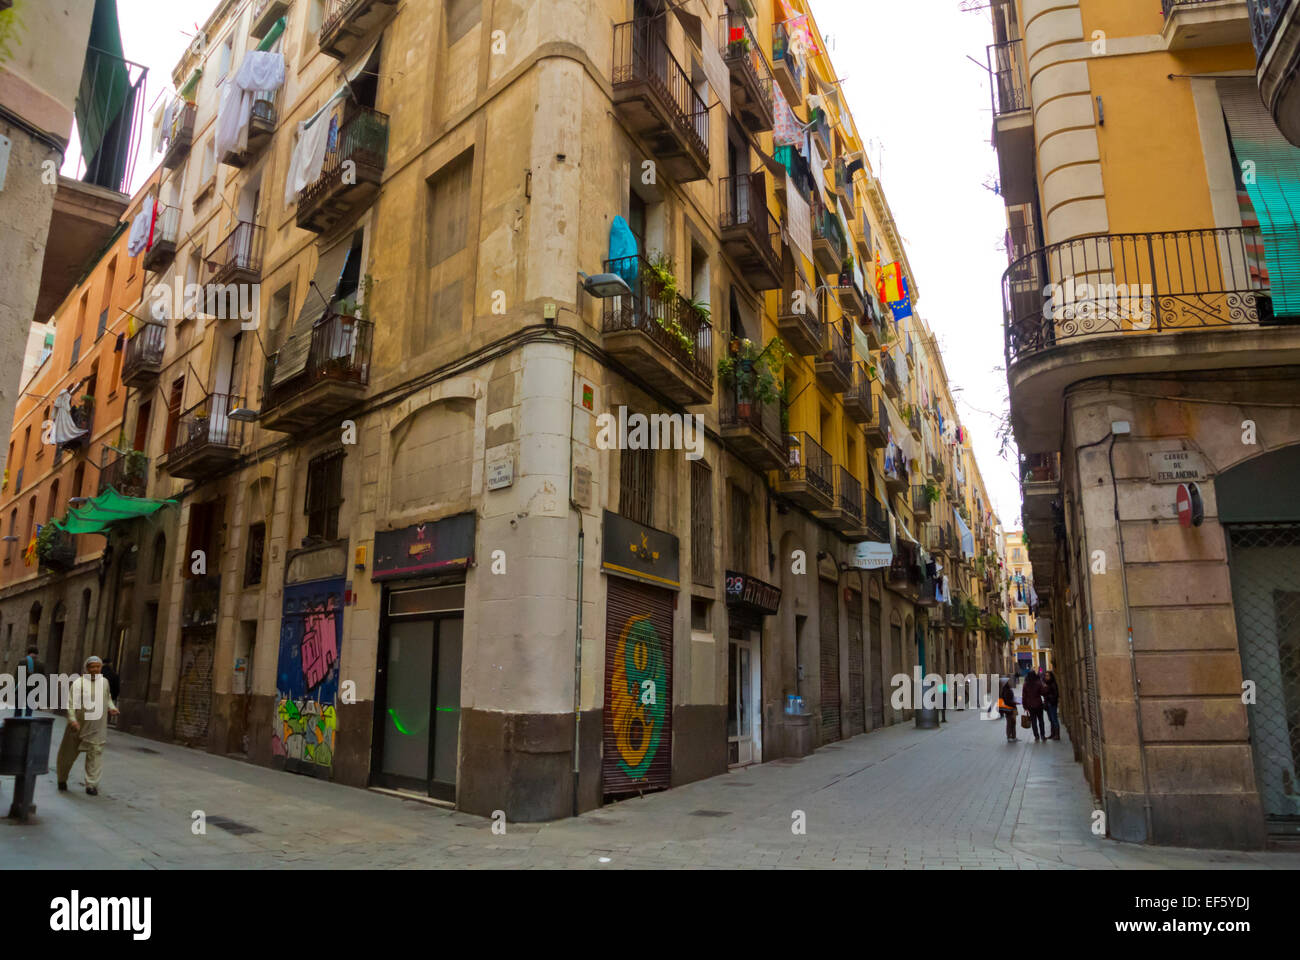 Le quartier de El Raval, Barcelone, Espagne Banque D'Images